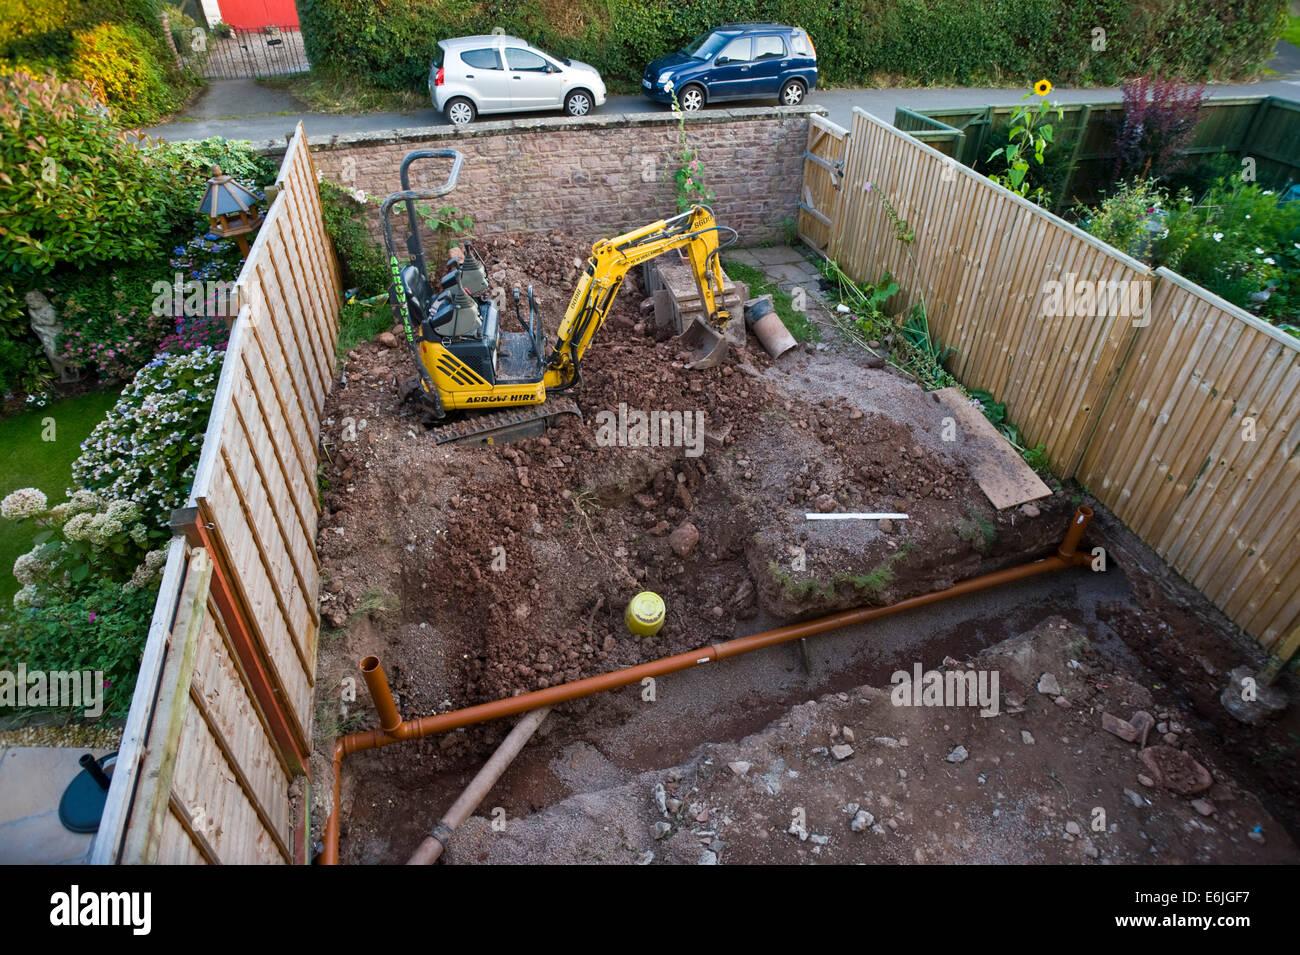 Les fondations creusées montrant le drainage de l'extension maison à Hay-on-Wye Powys Pays de Galles UK Banque D'Images